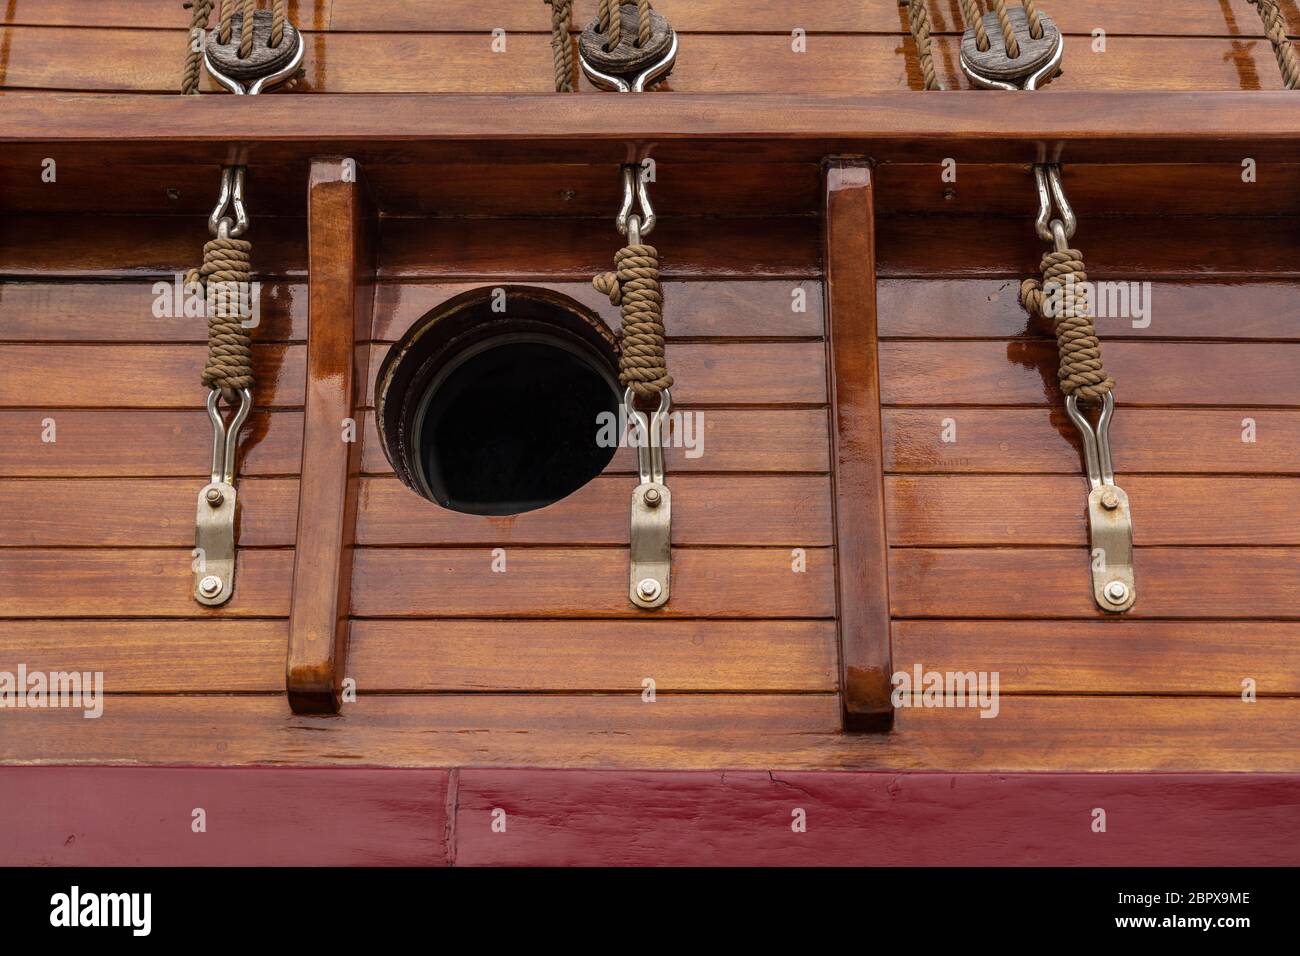 Un hublot et des blocs de poulie avec des cordes dans un style ancien sur un bateau à voile historique. Matériaux en bois de teinte chaude pour une sensation rétro Banque D'Images